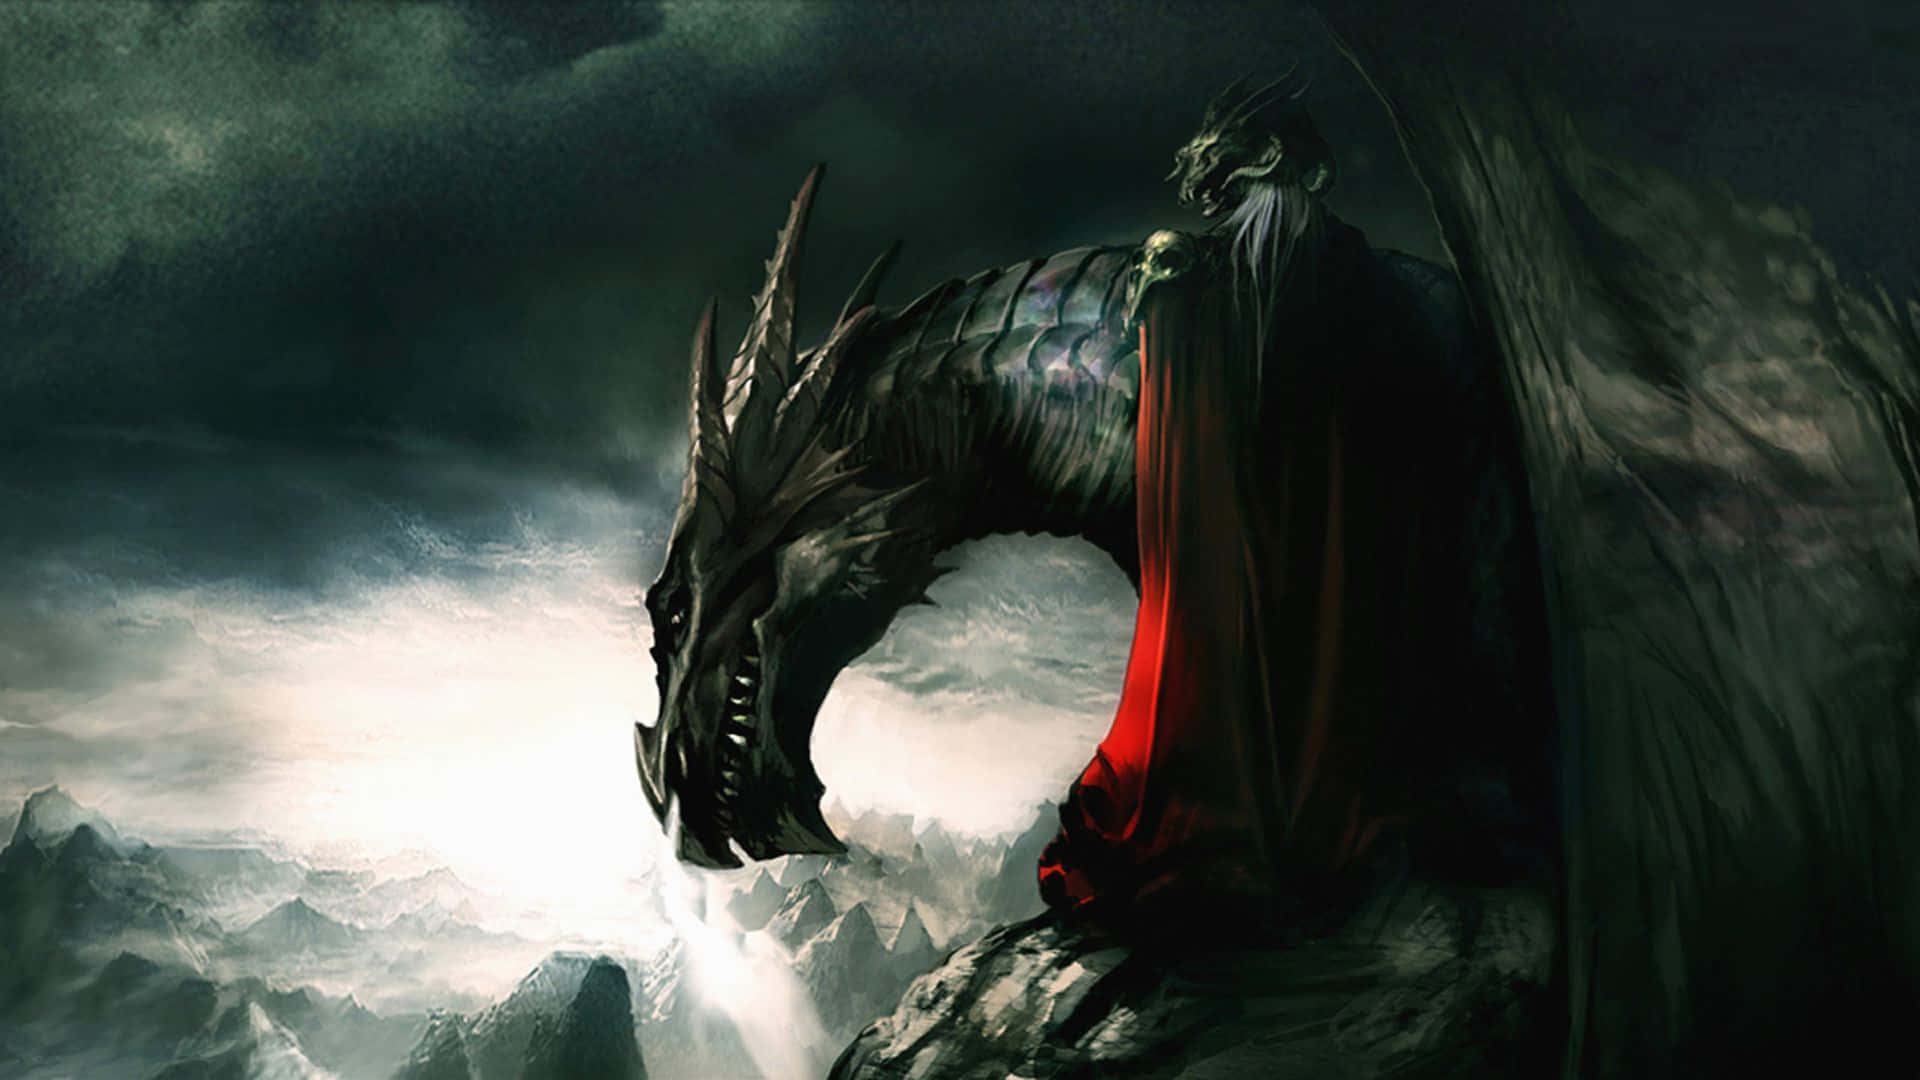 1080p Dragon Fantasy Warrior Silhouette Wallpaper